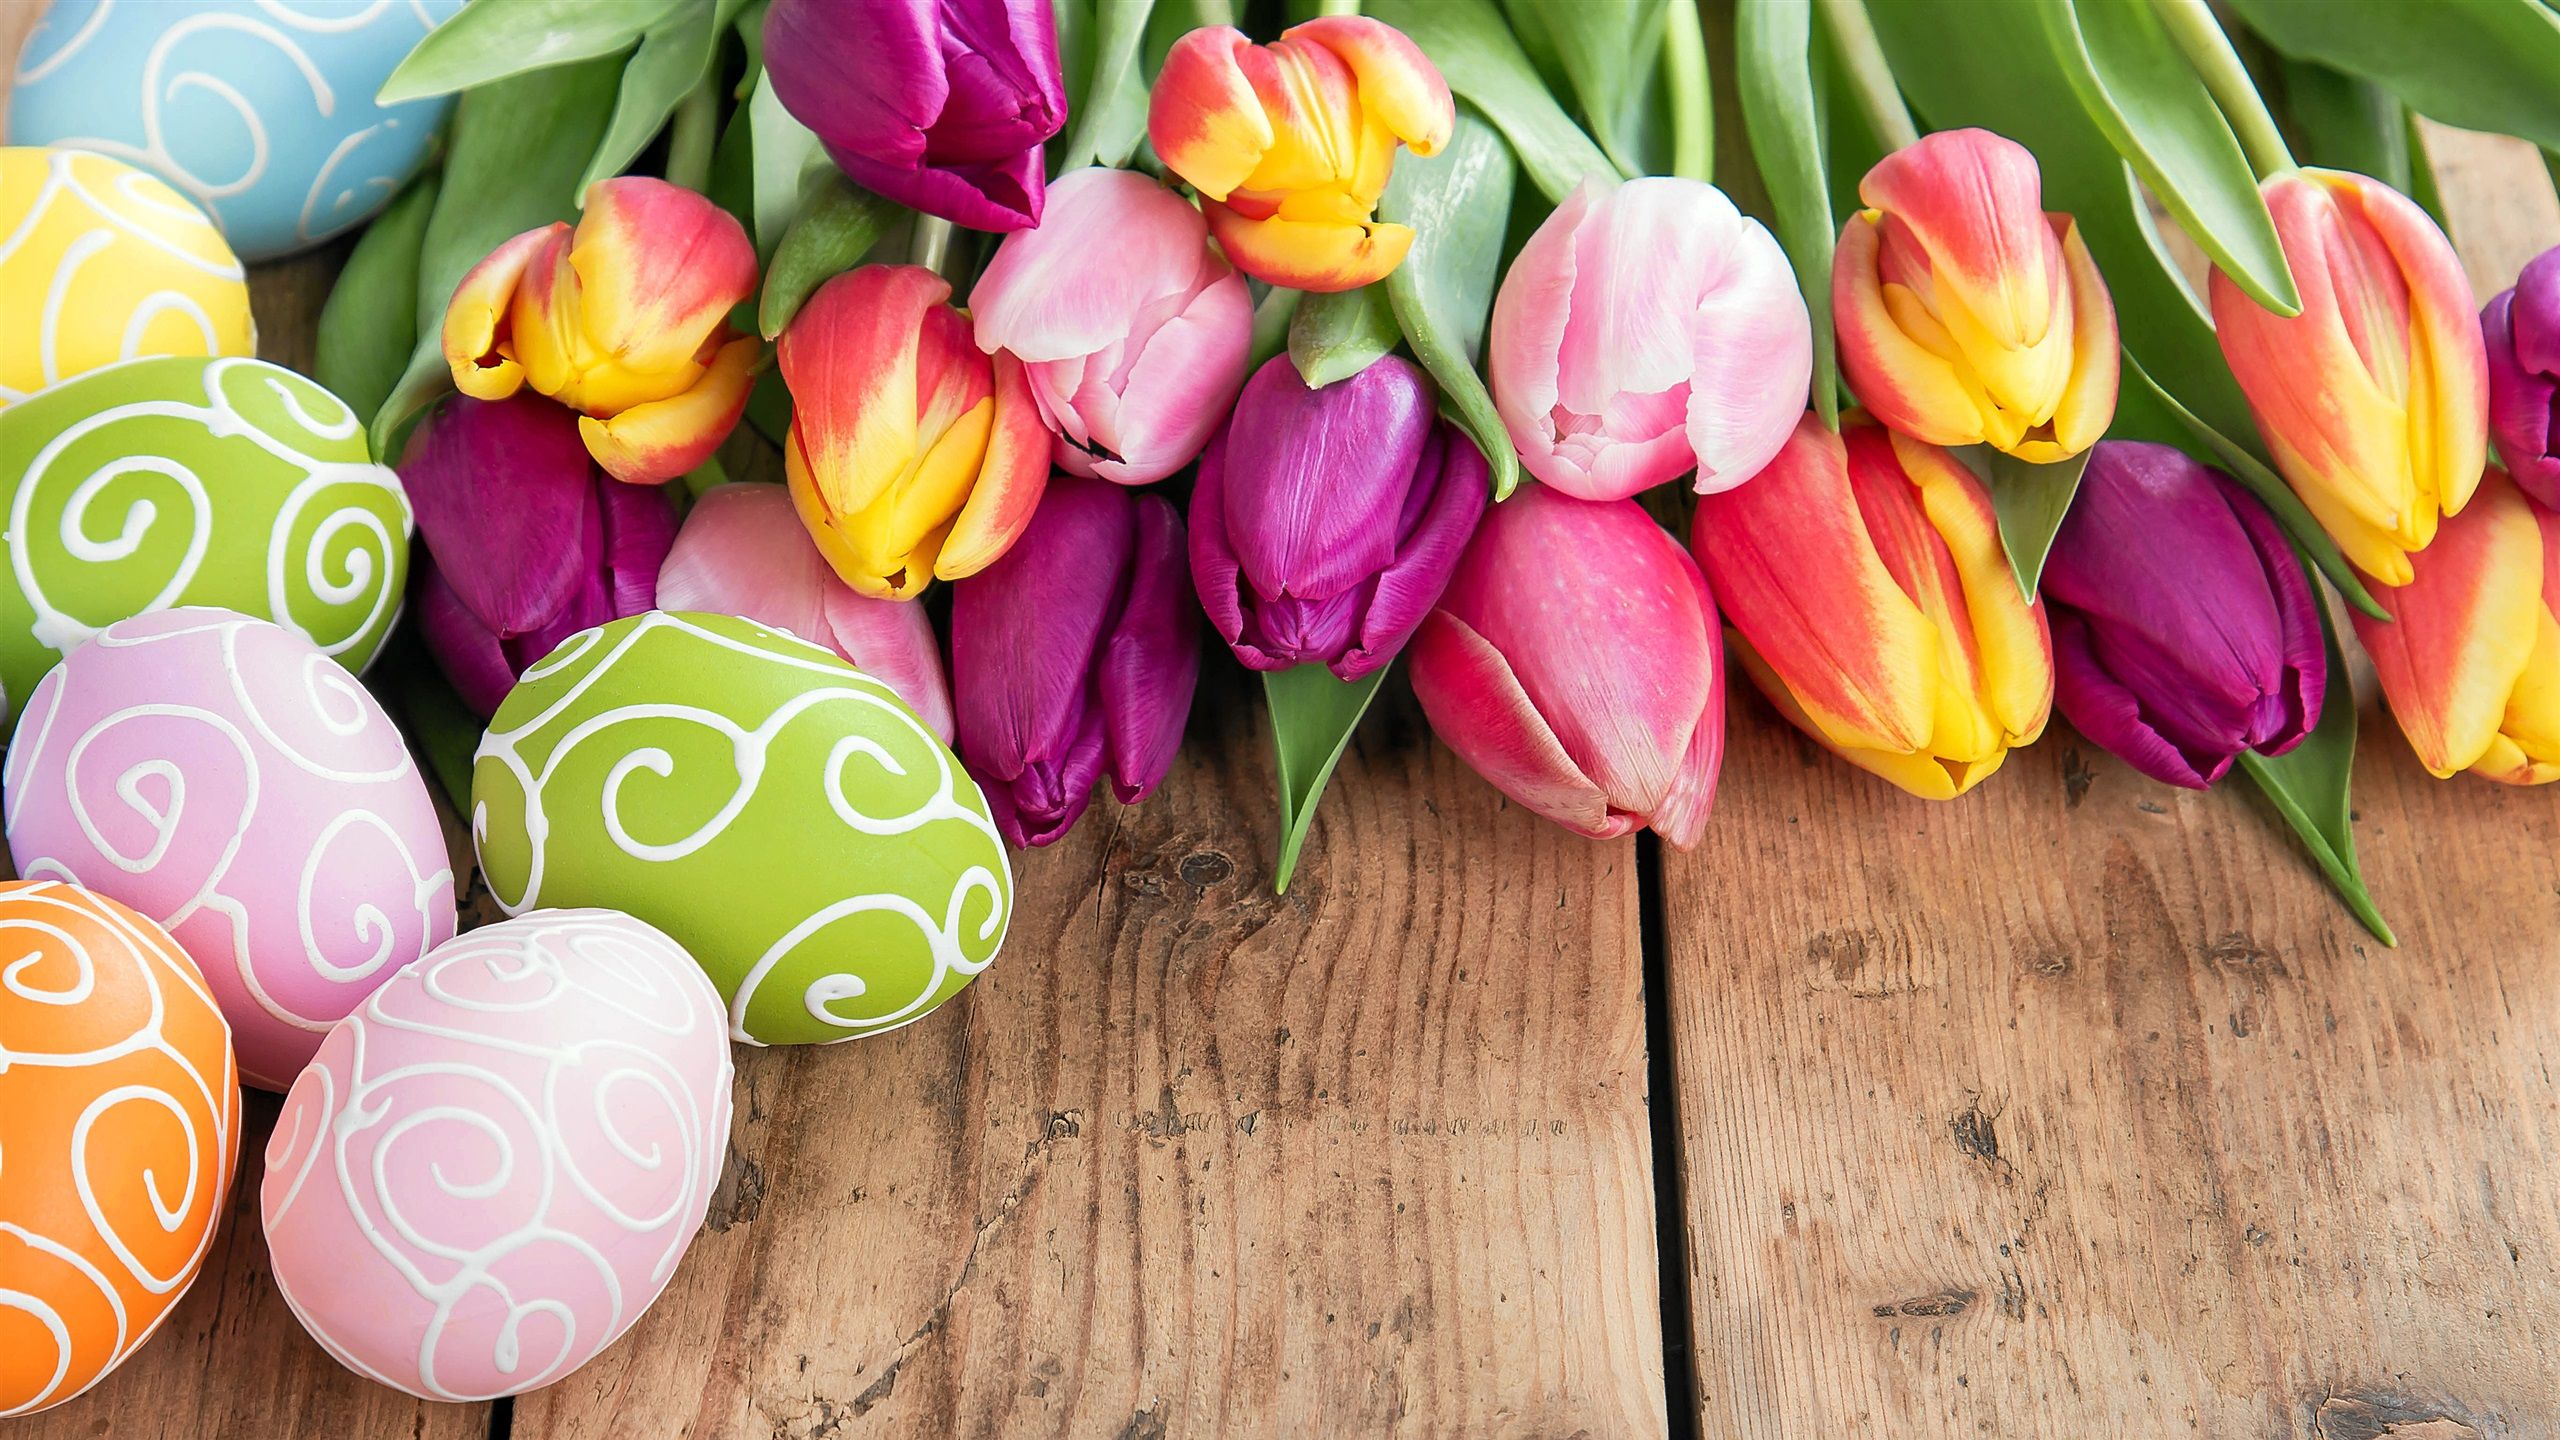 Ostermontag Hintergrundbild 2560x1440. Frohe Ostern, bunte Eier, schöne Blumen, Tulpen, Frühling 3840x2160 UHD 4K Hintergrundbilder, HD, Bild